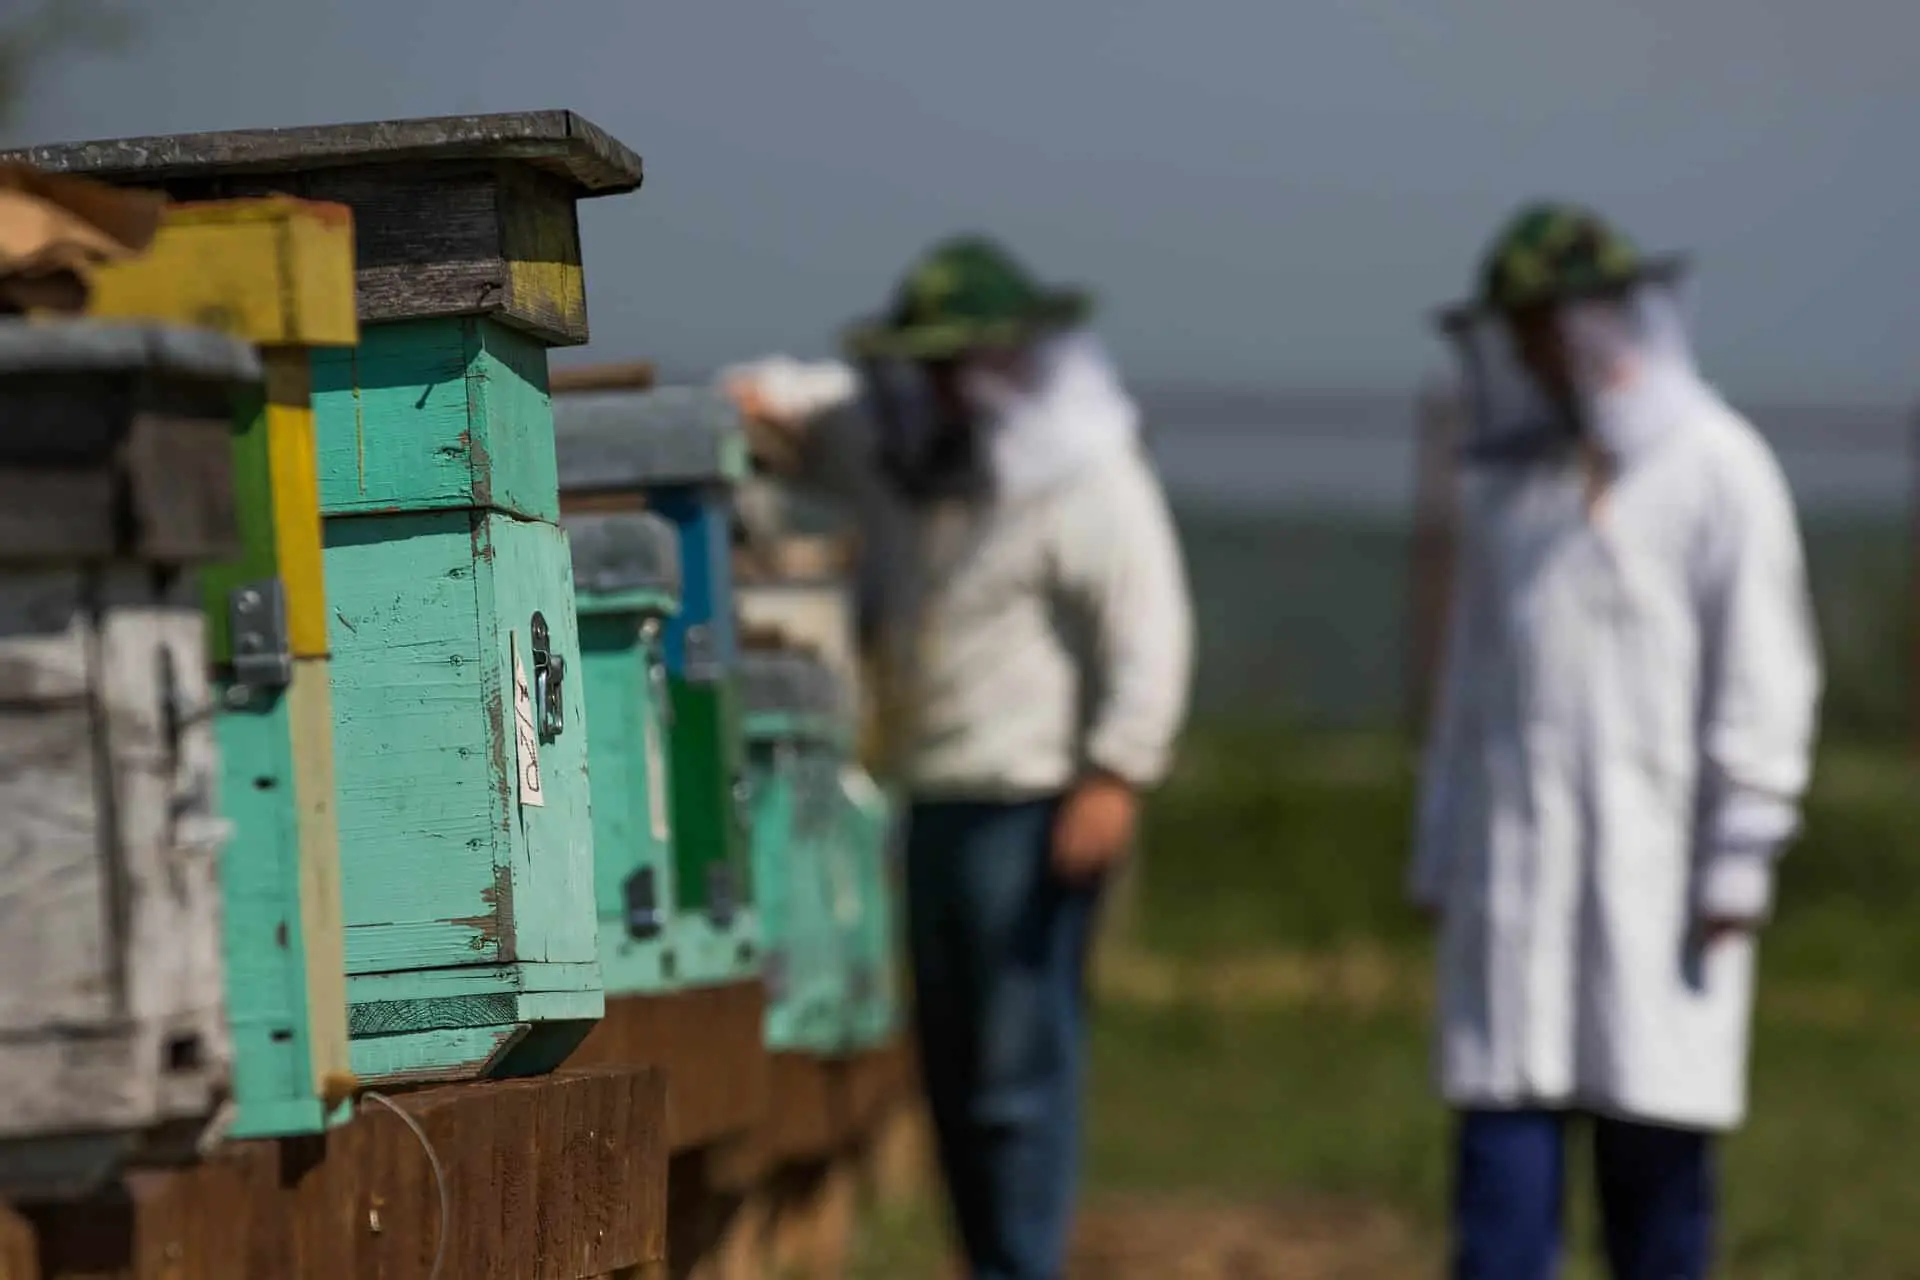 Beekeepers inspecting beehives